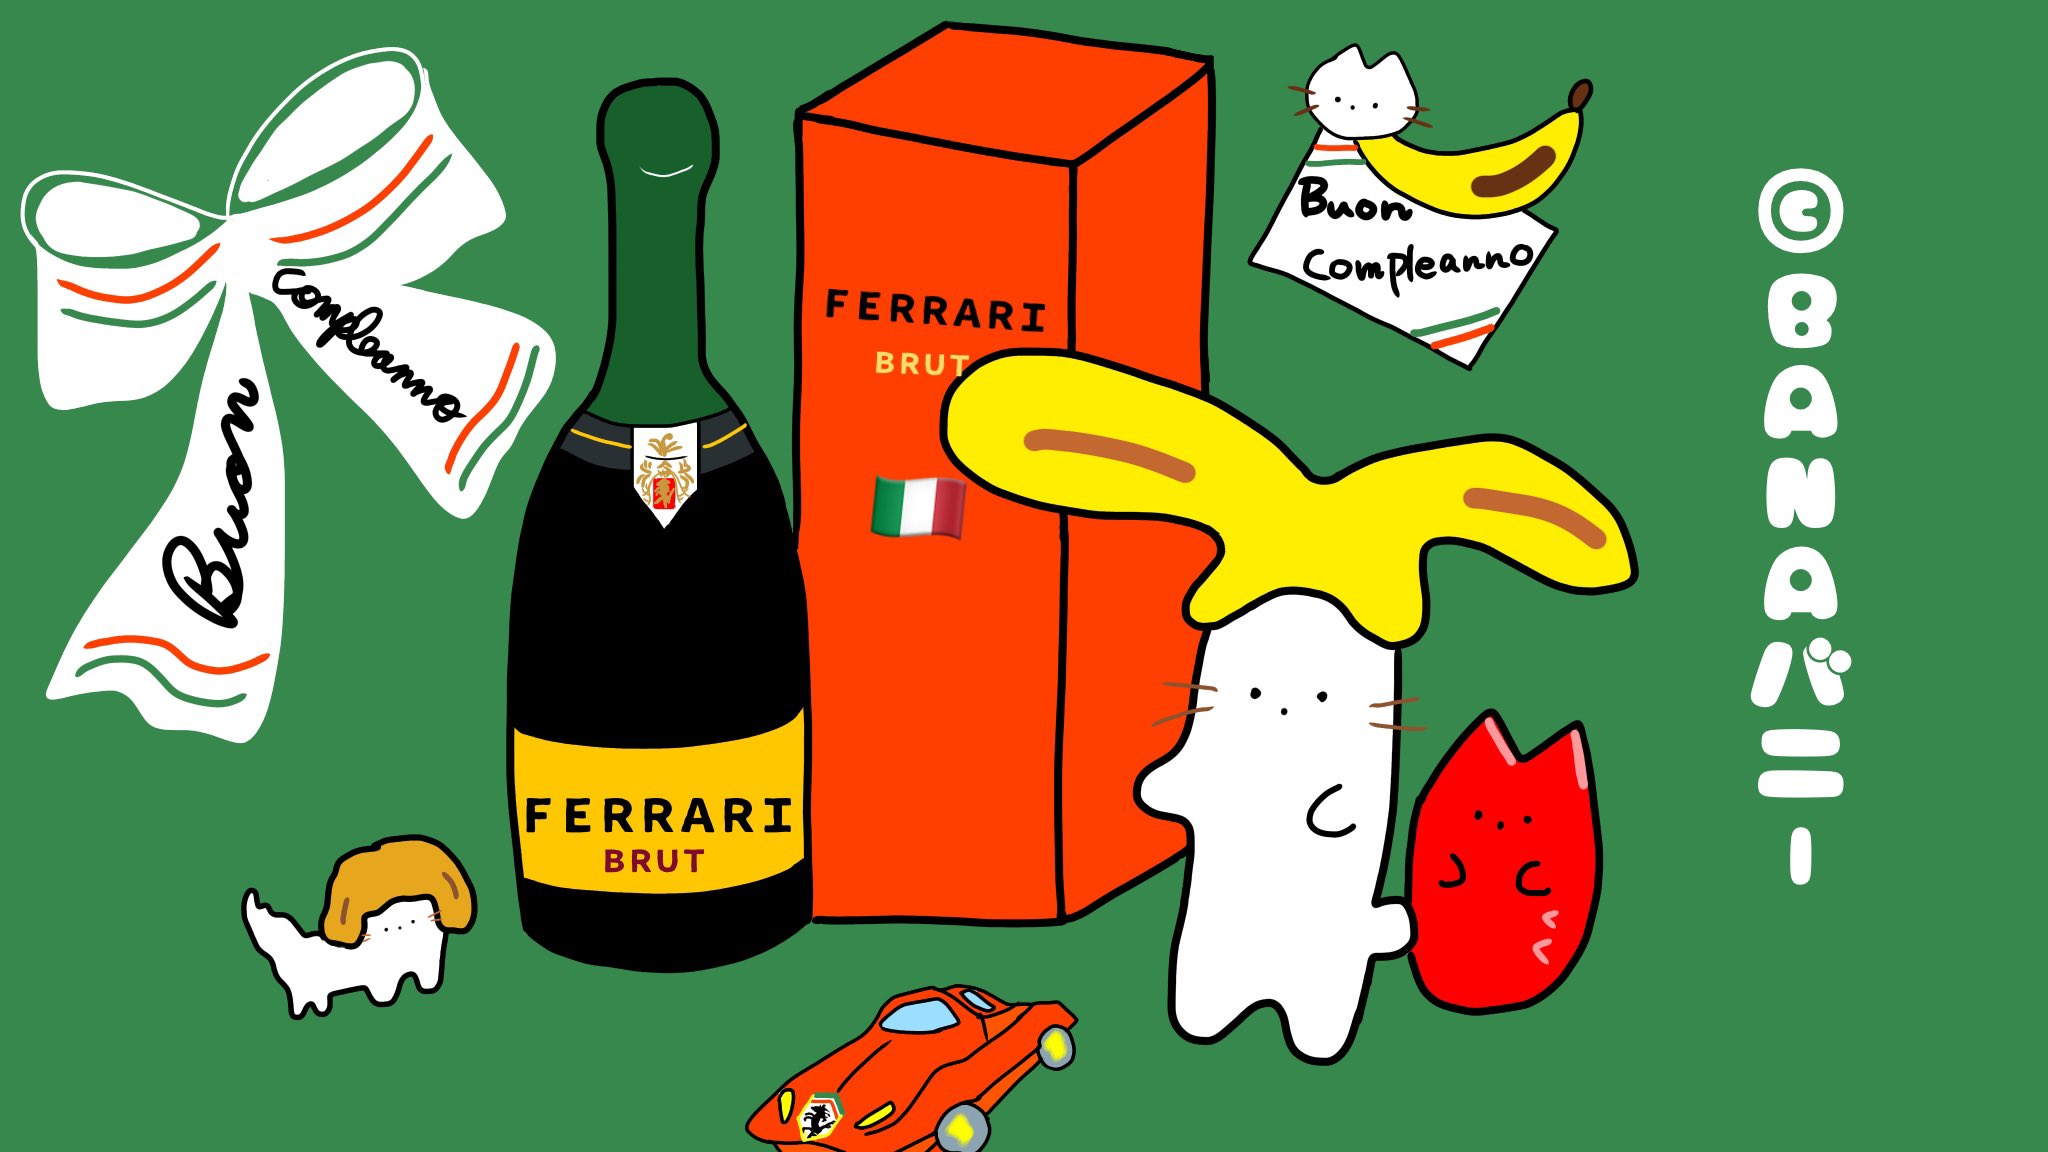 バナバニー Hello ｂａｎａバニー アメリカから 帰ったら イタリア語でおめでとう メッセージとフェッラーリのスパークリングワインも 車のフェラーリの置物も 可愛いキャラクター ワイン イタリア 外車 高級シャンパン 猫好き